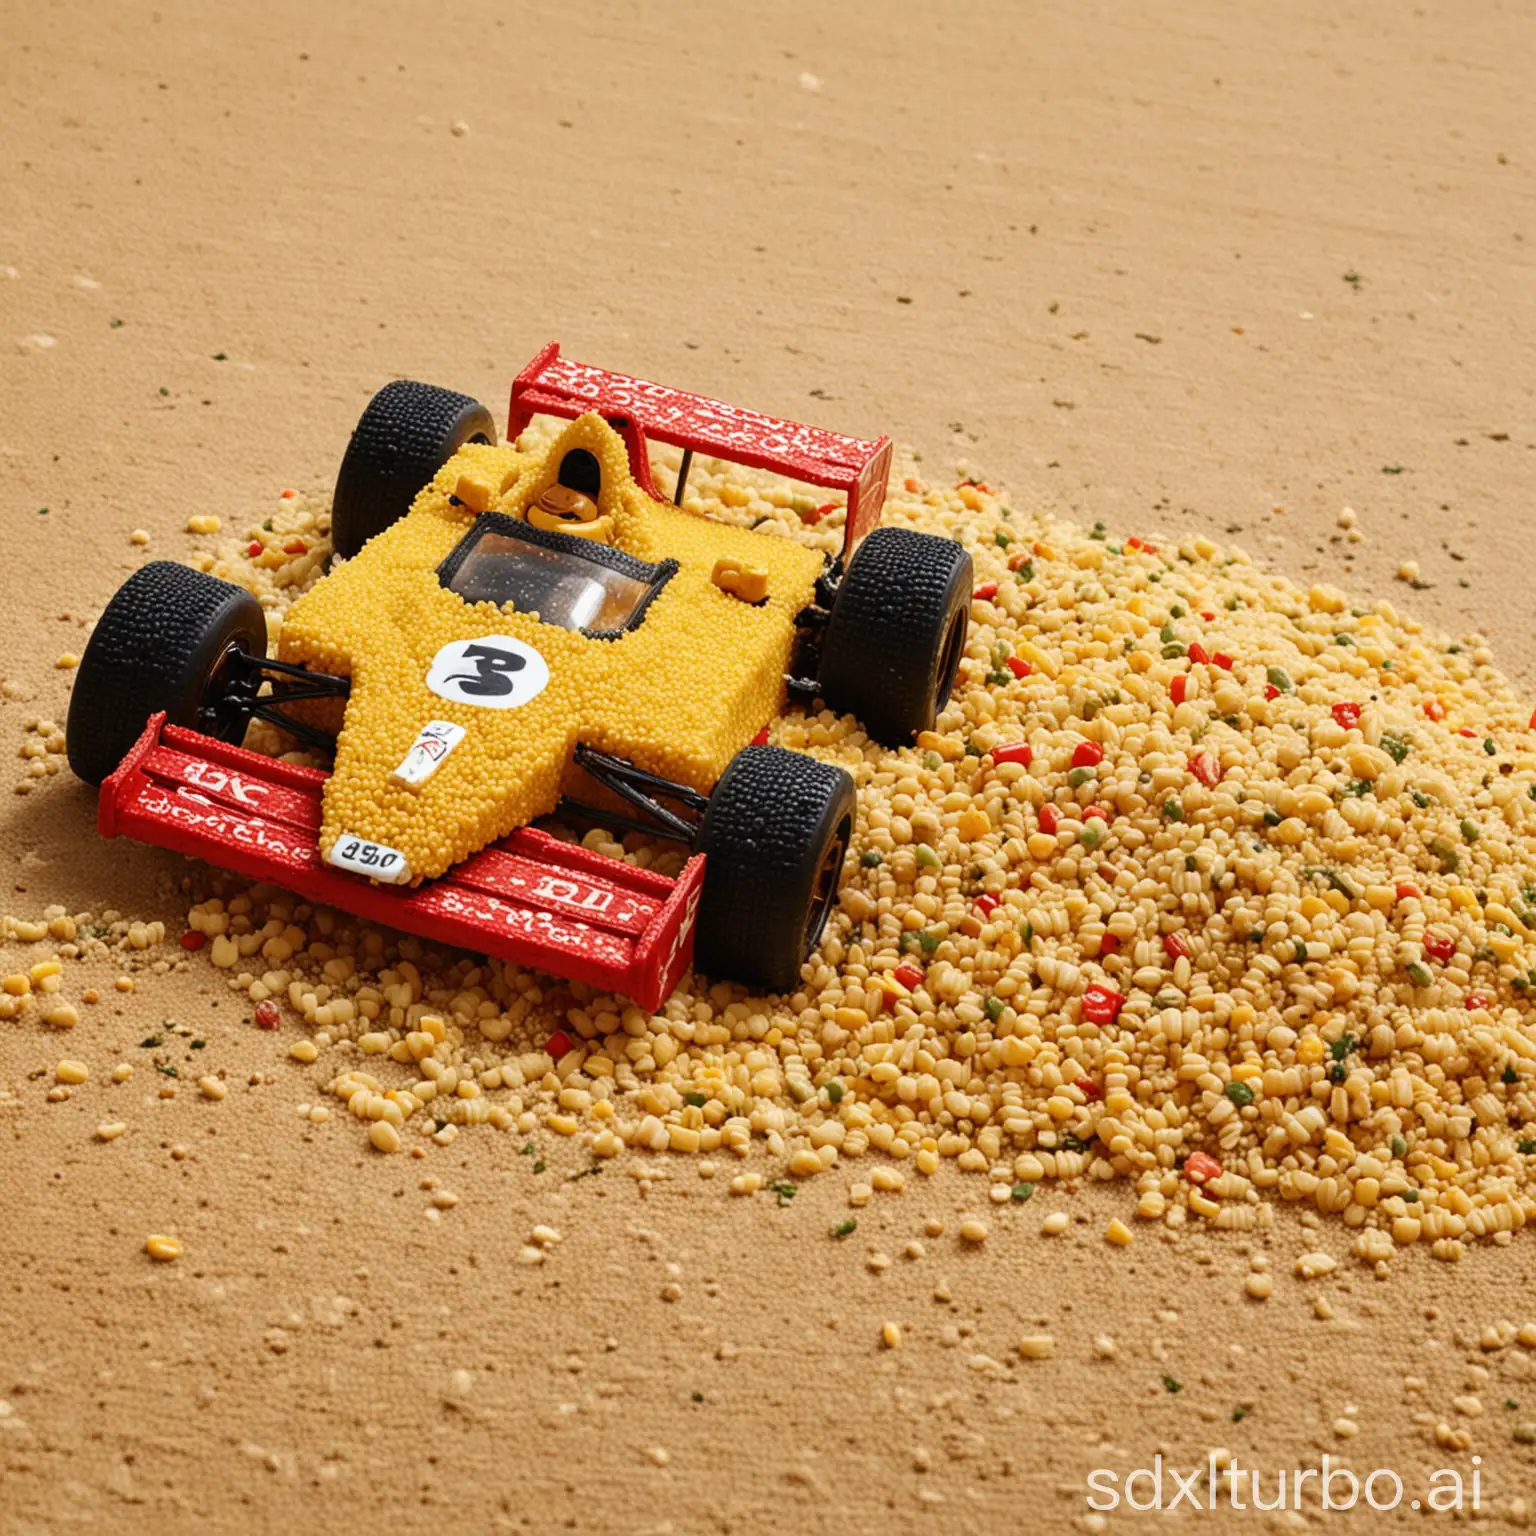 a race car in couscous